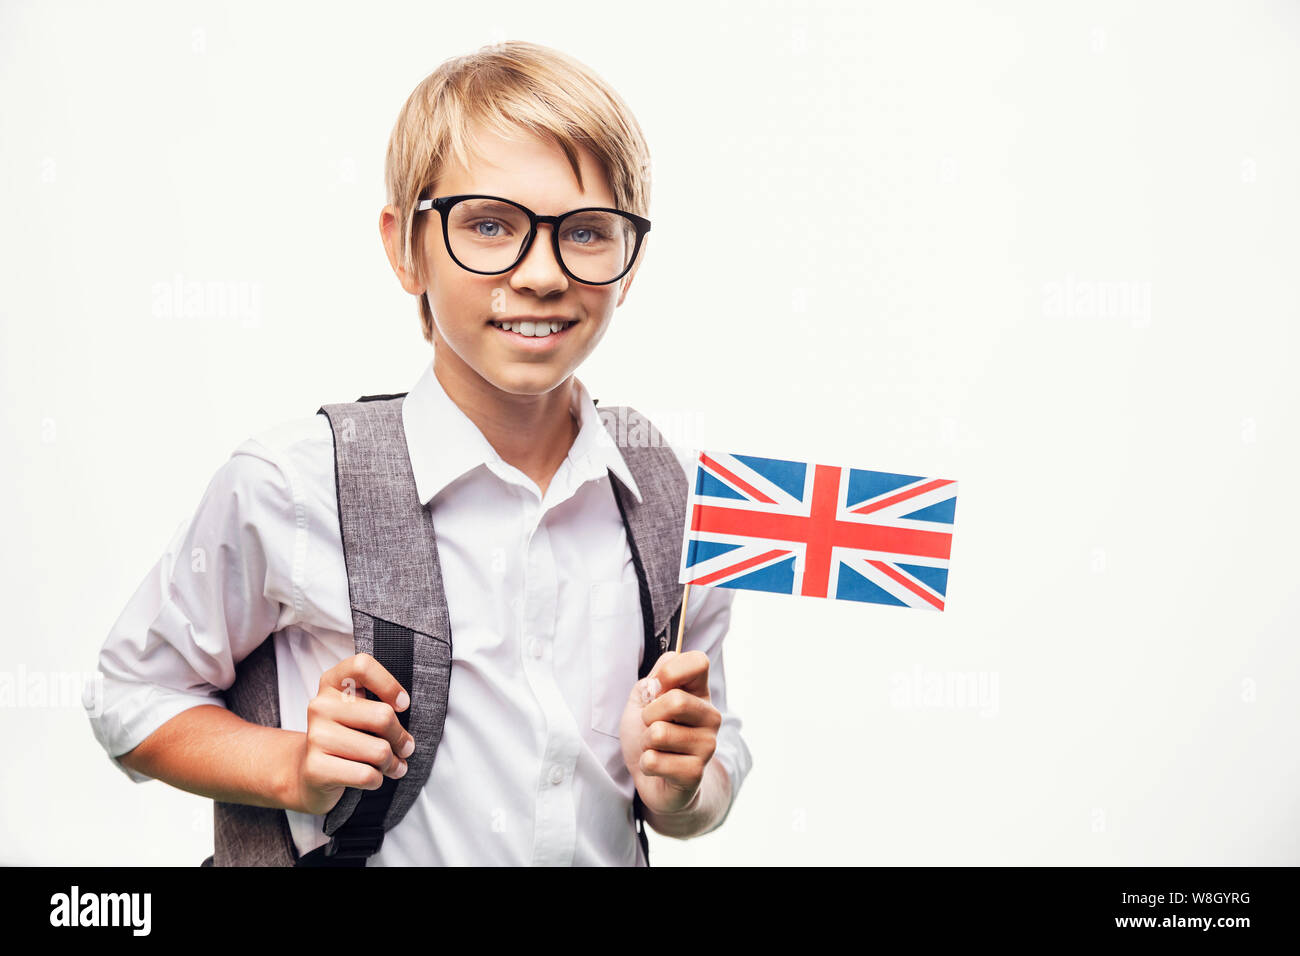 Élève de Smiling holding lunettes drapeau britannique Banque D'Images